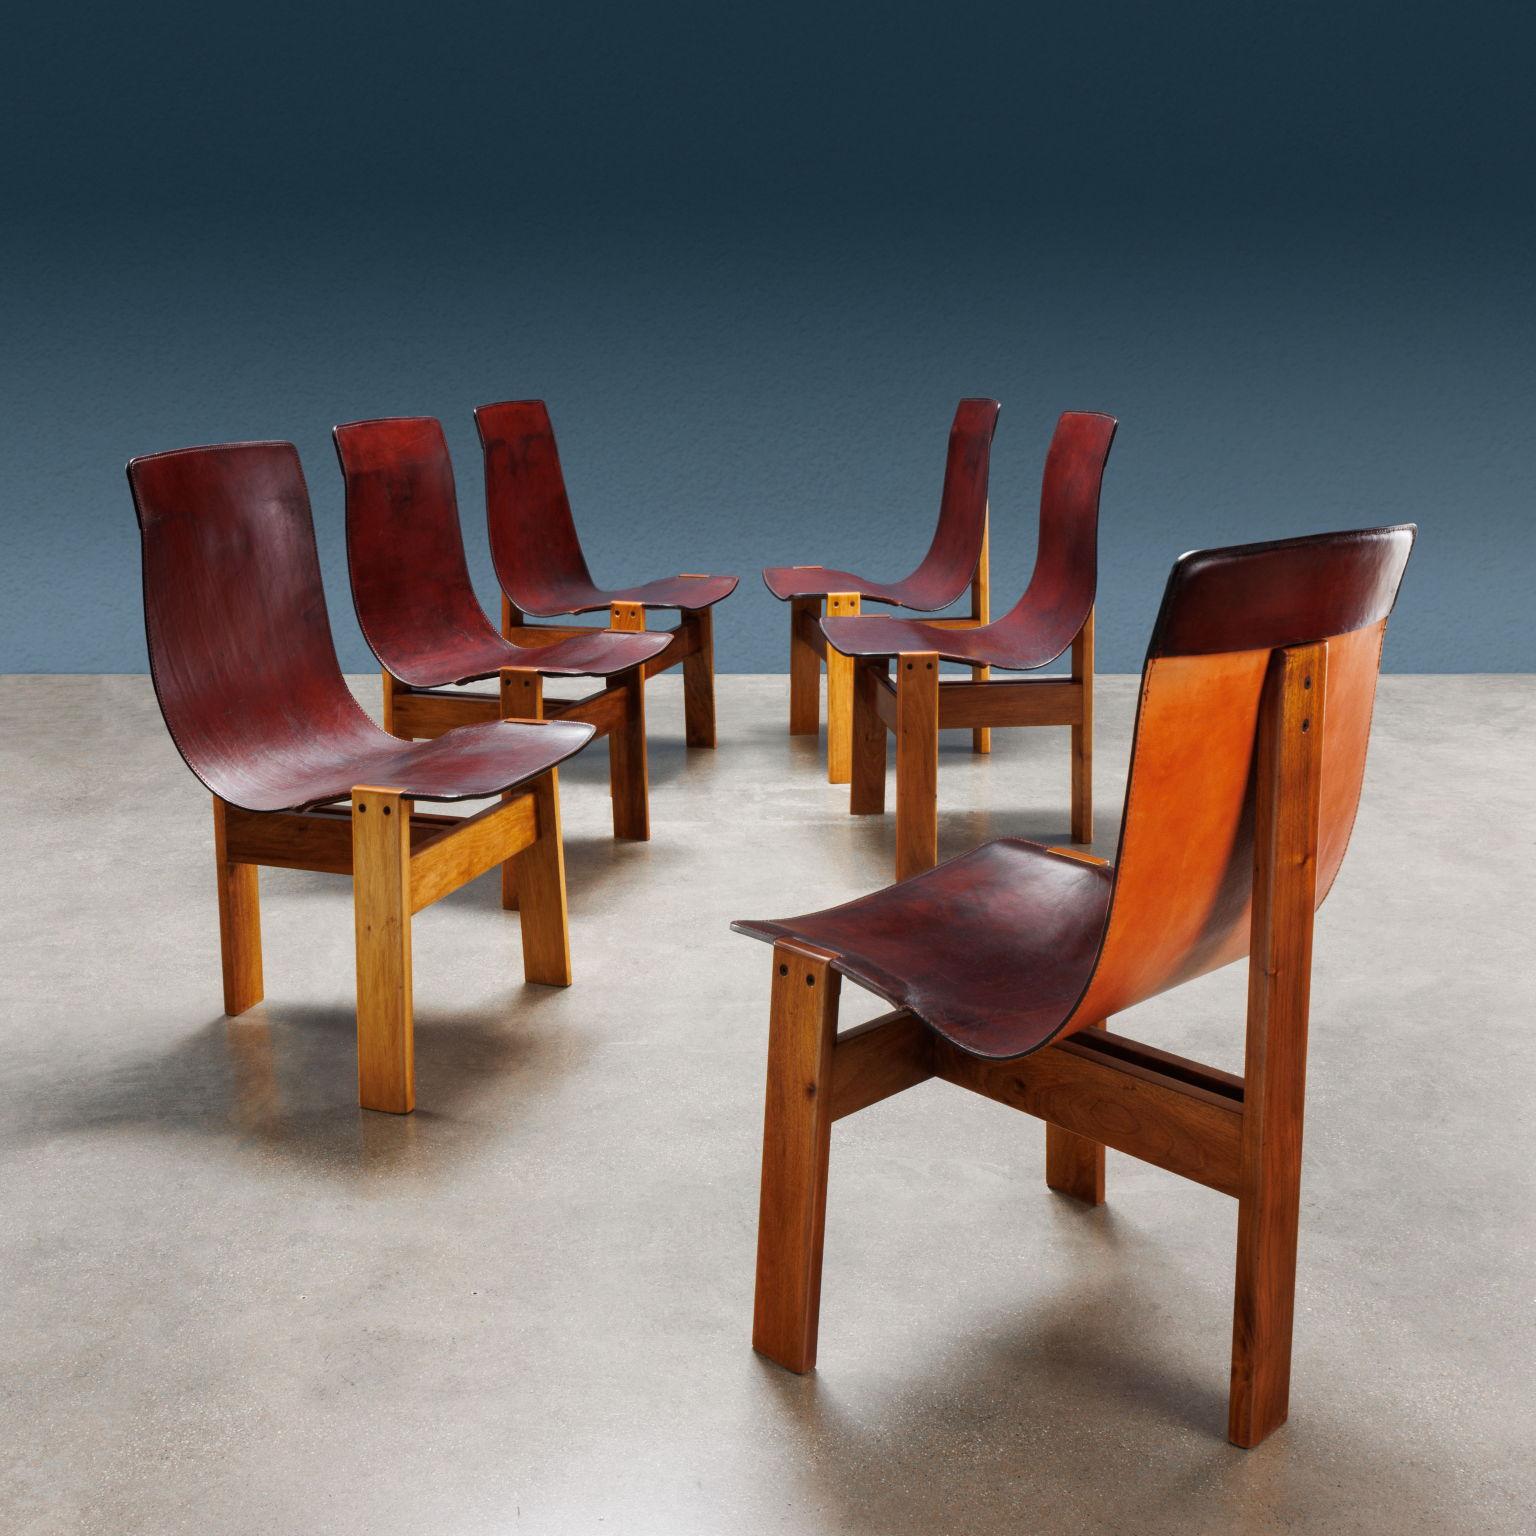 Set di sei sedie modello 'Tre 3' disegnate da Angelo Mangiarotti nel 1978 per una produzione Skipper. Struttura in legno con tre gambe, seduta in unico pezzo di cuoio. 